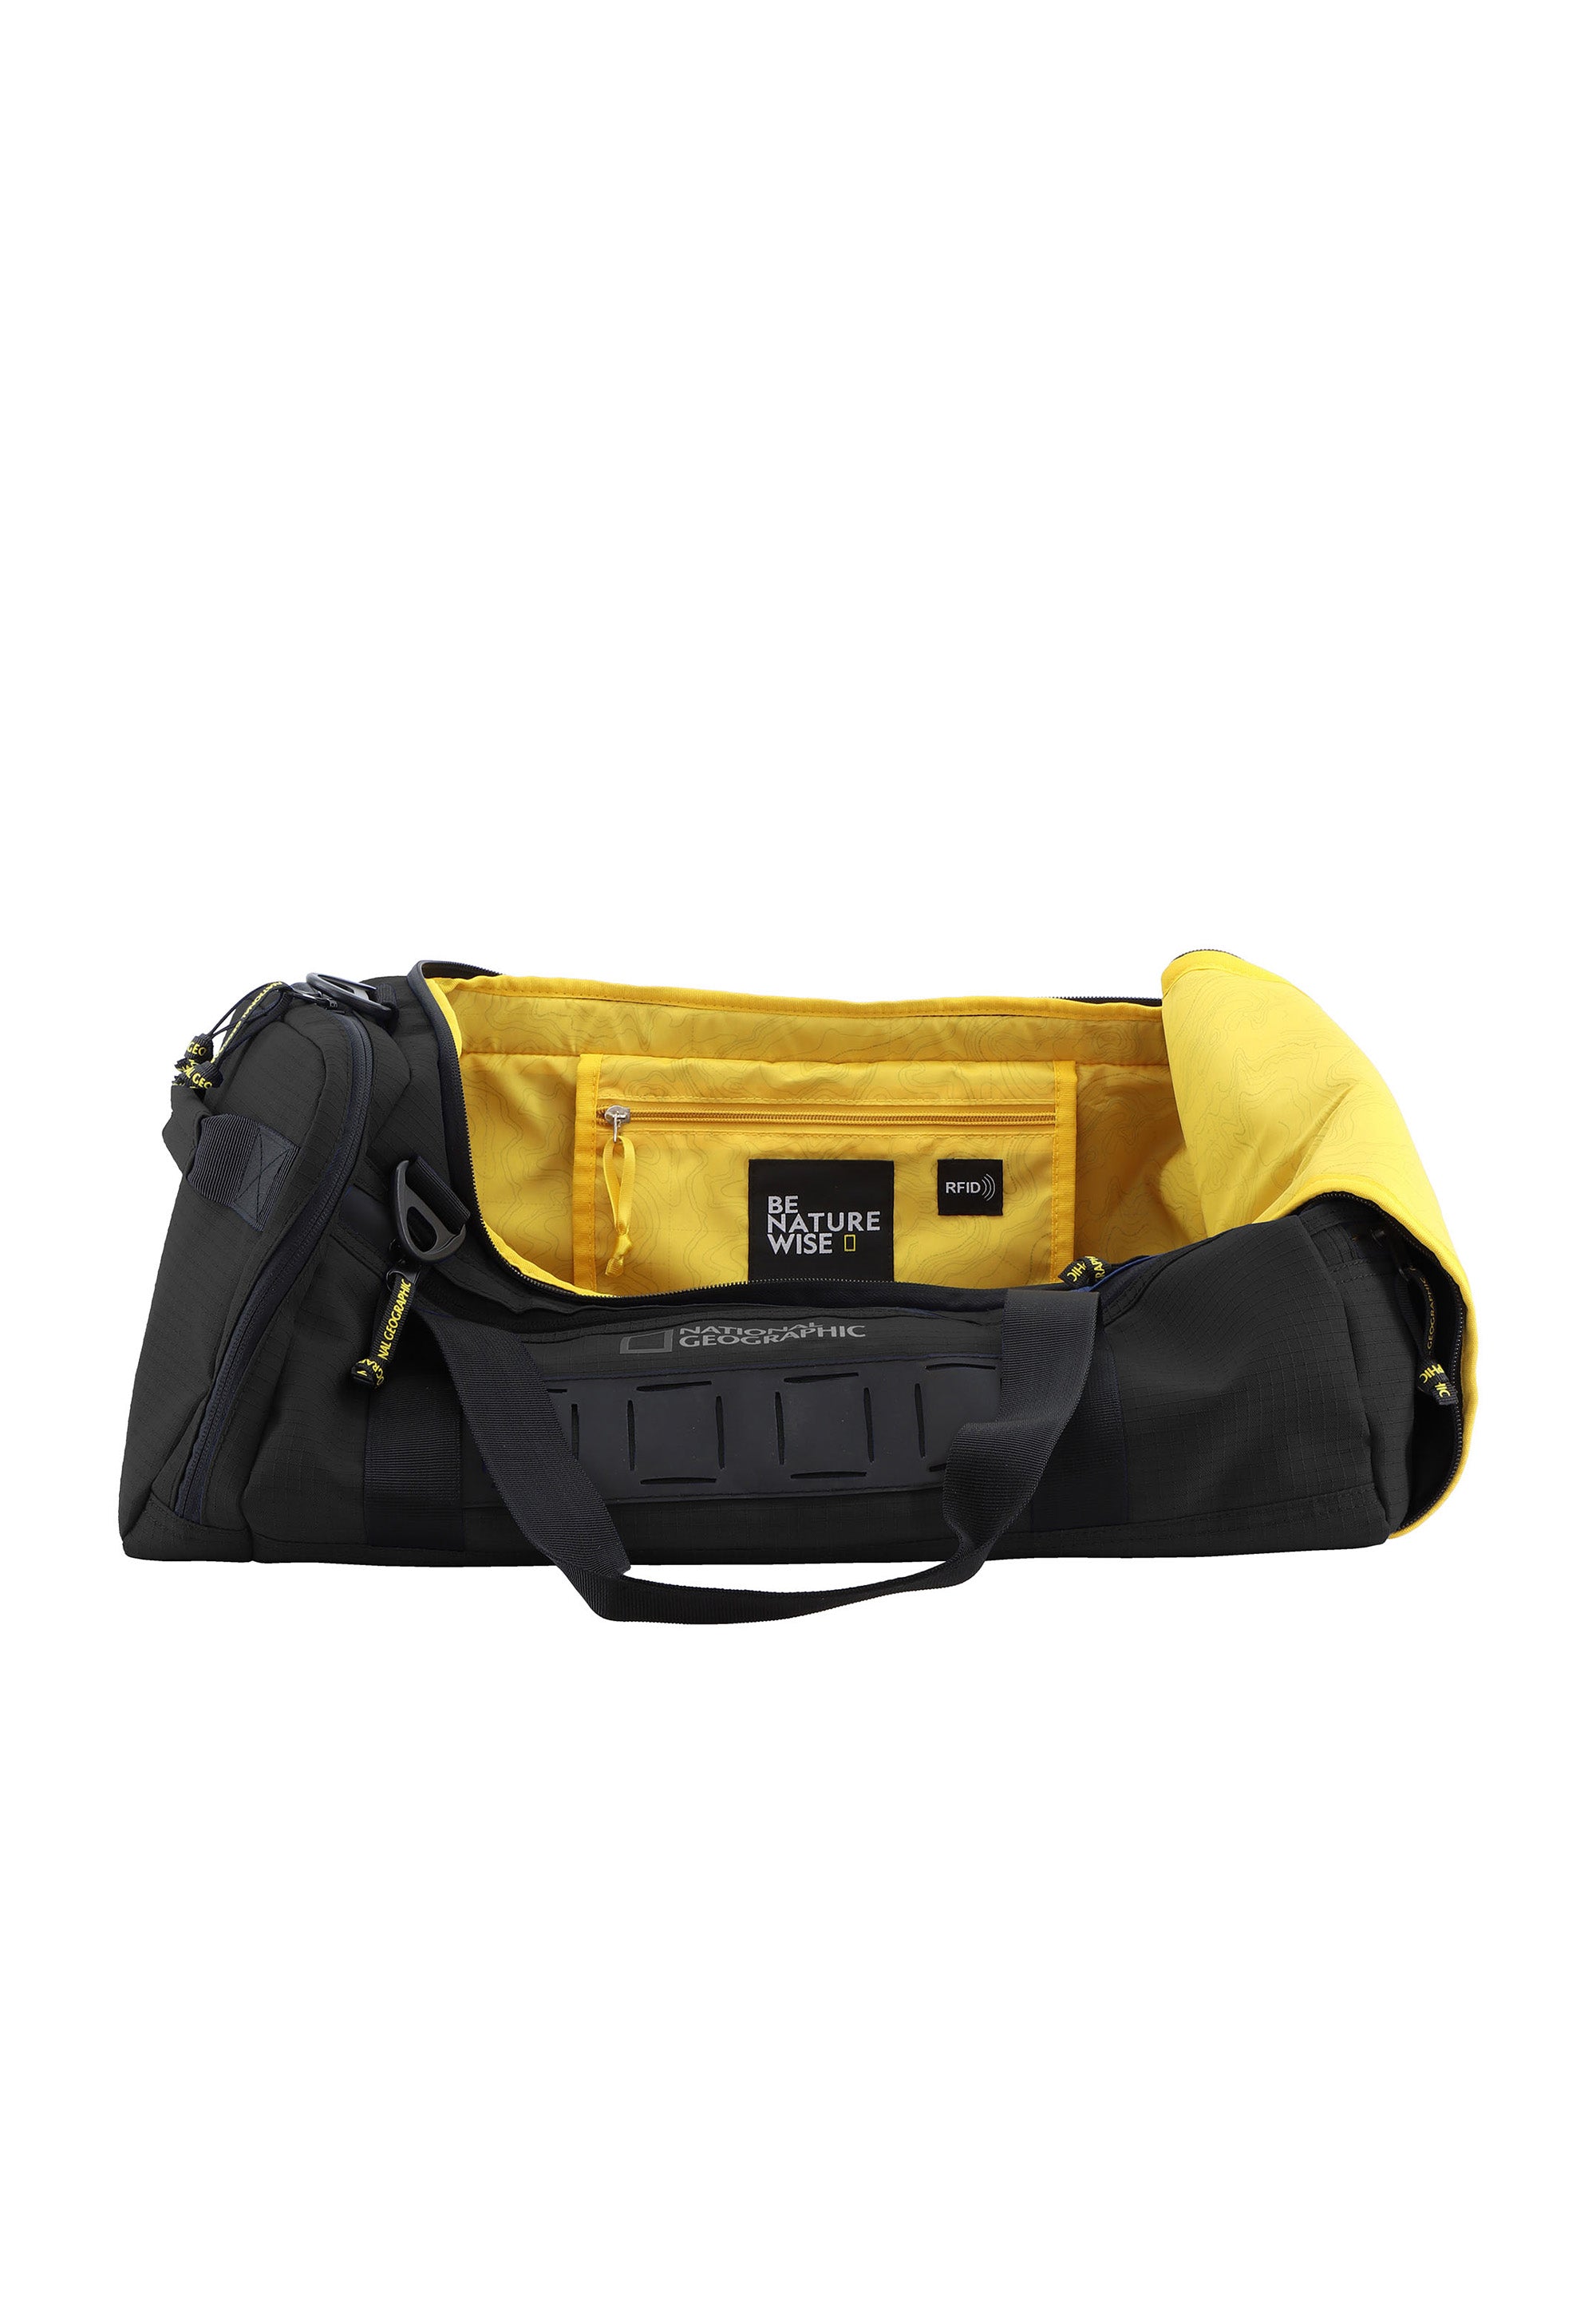 National Geographic - Explorer III | Reisetasche Sporttasche aus recycelten PET-Flaschen | Schwarz